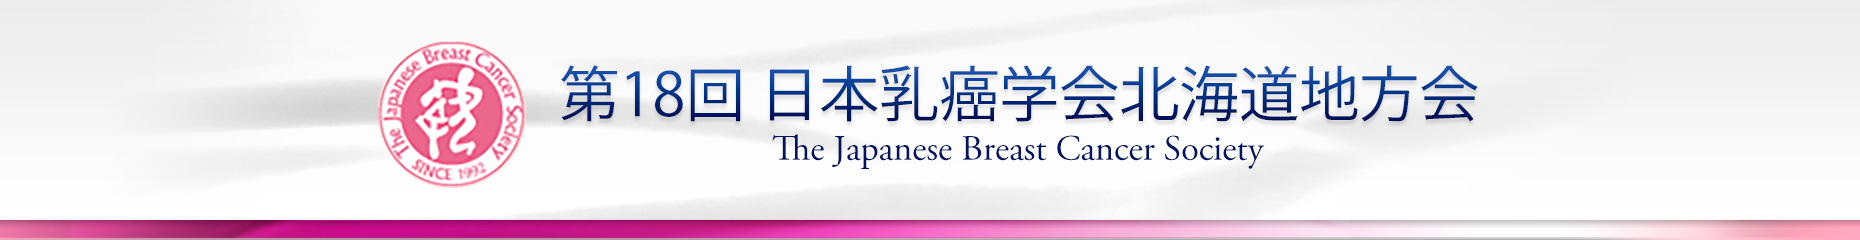 第18回日本乳癌学会北海道地方会